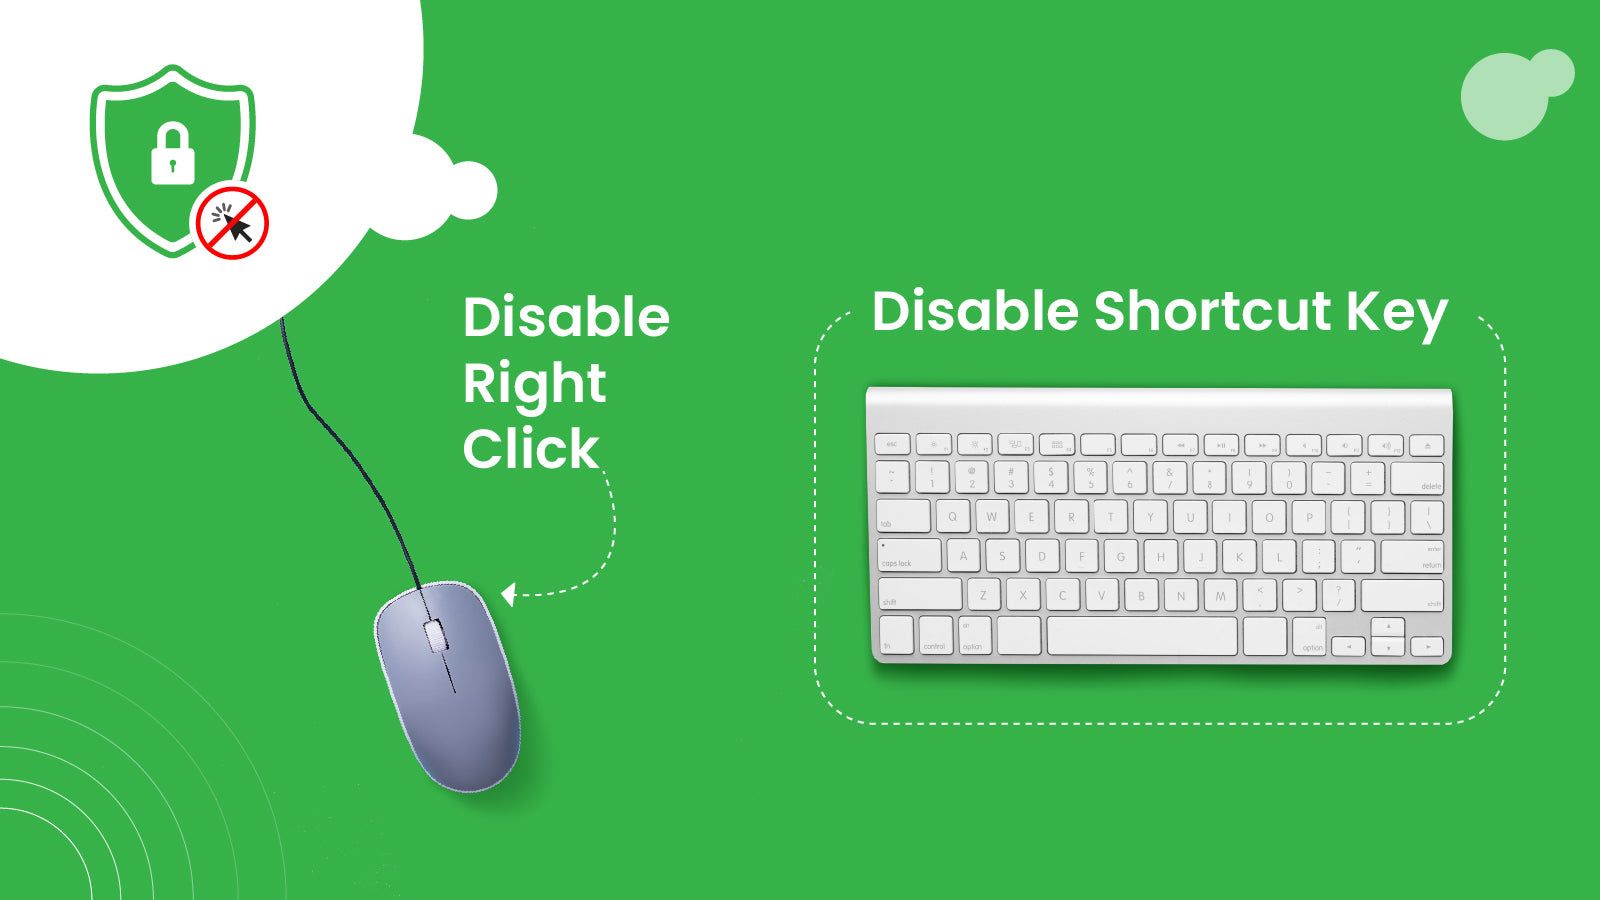 Prevents right click and shortcut keys.